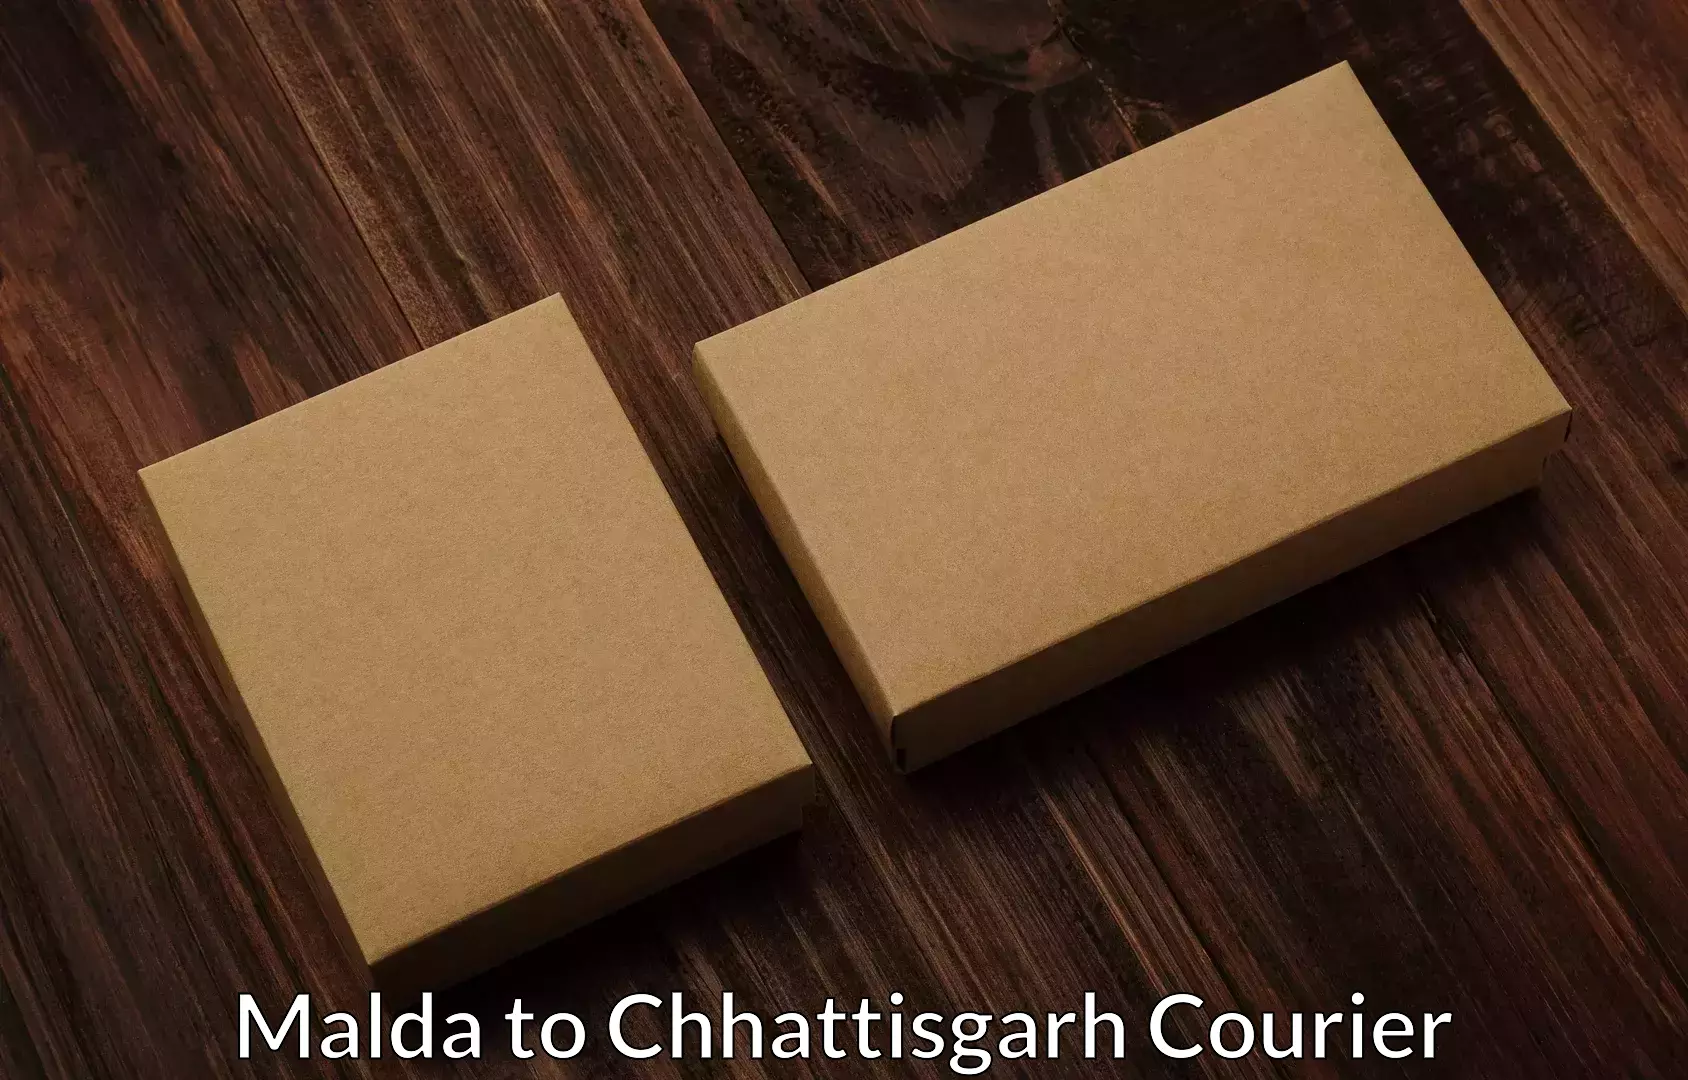 Professional home movers Malda to Chhattisgarh